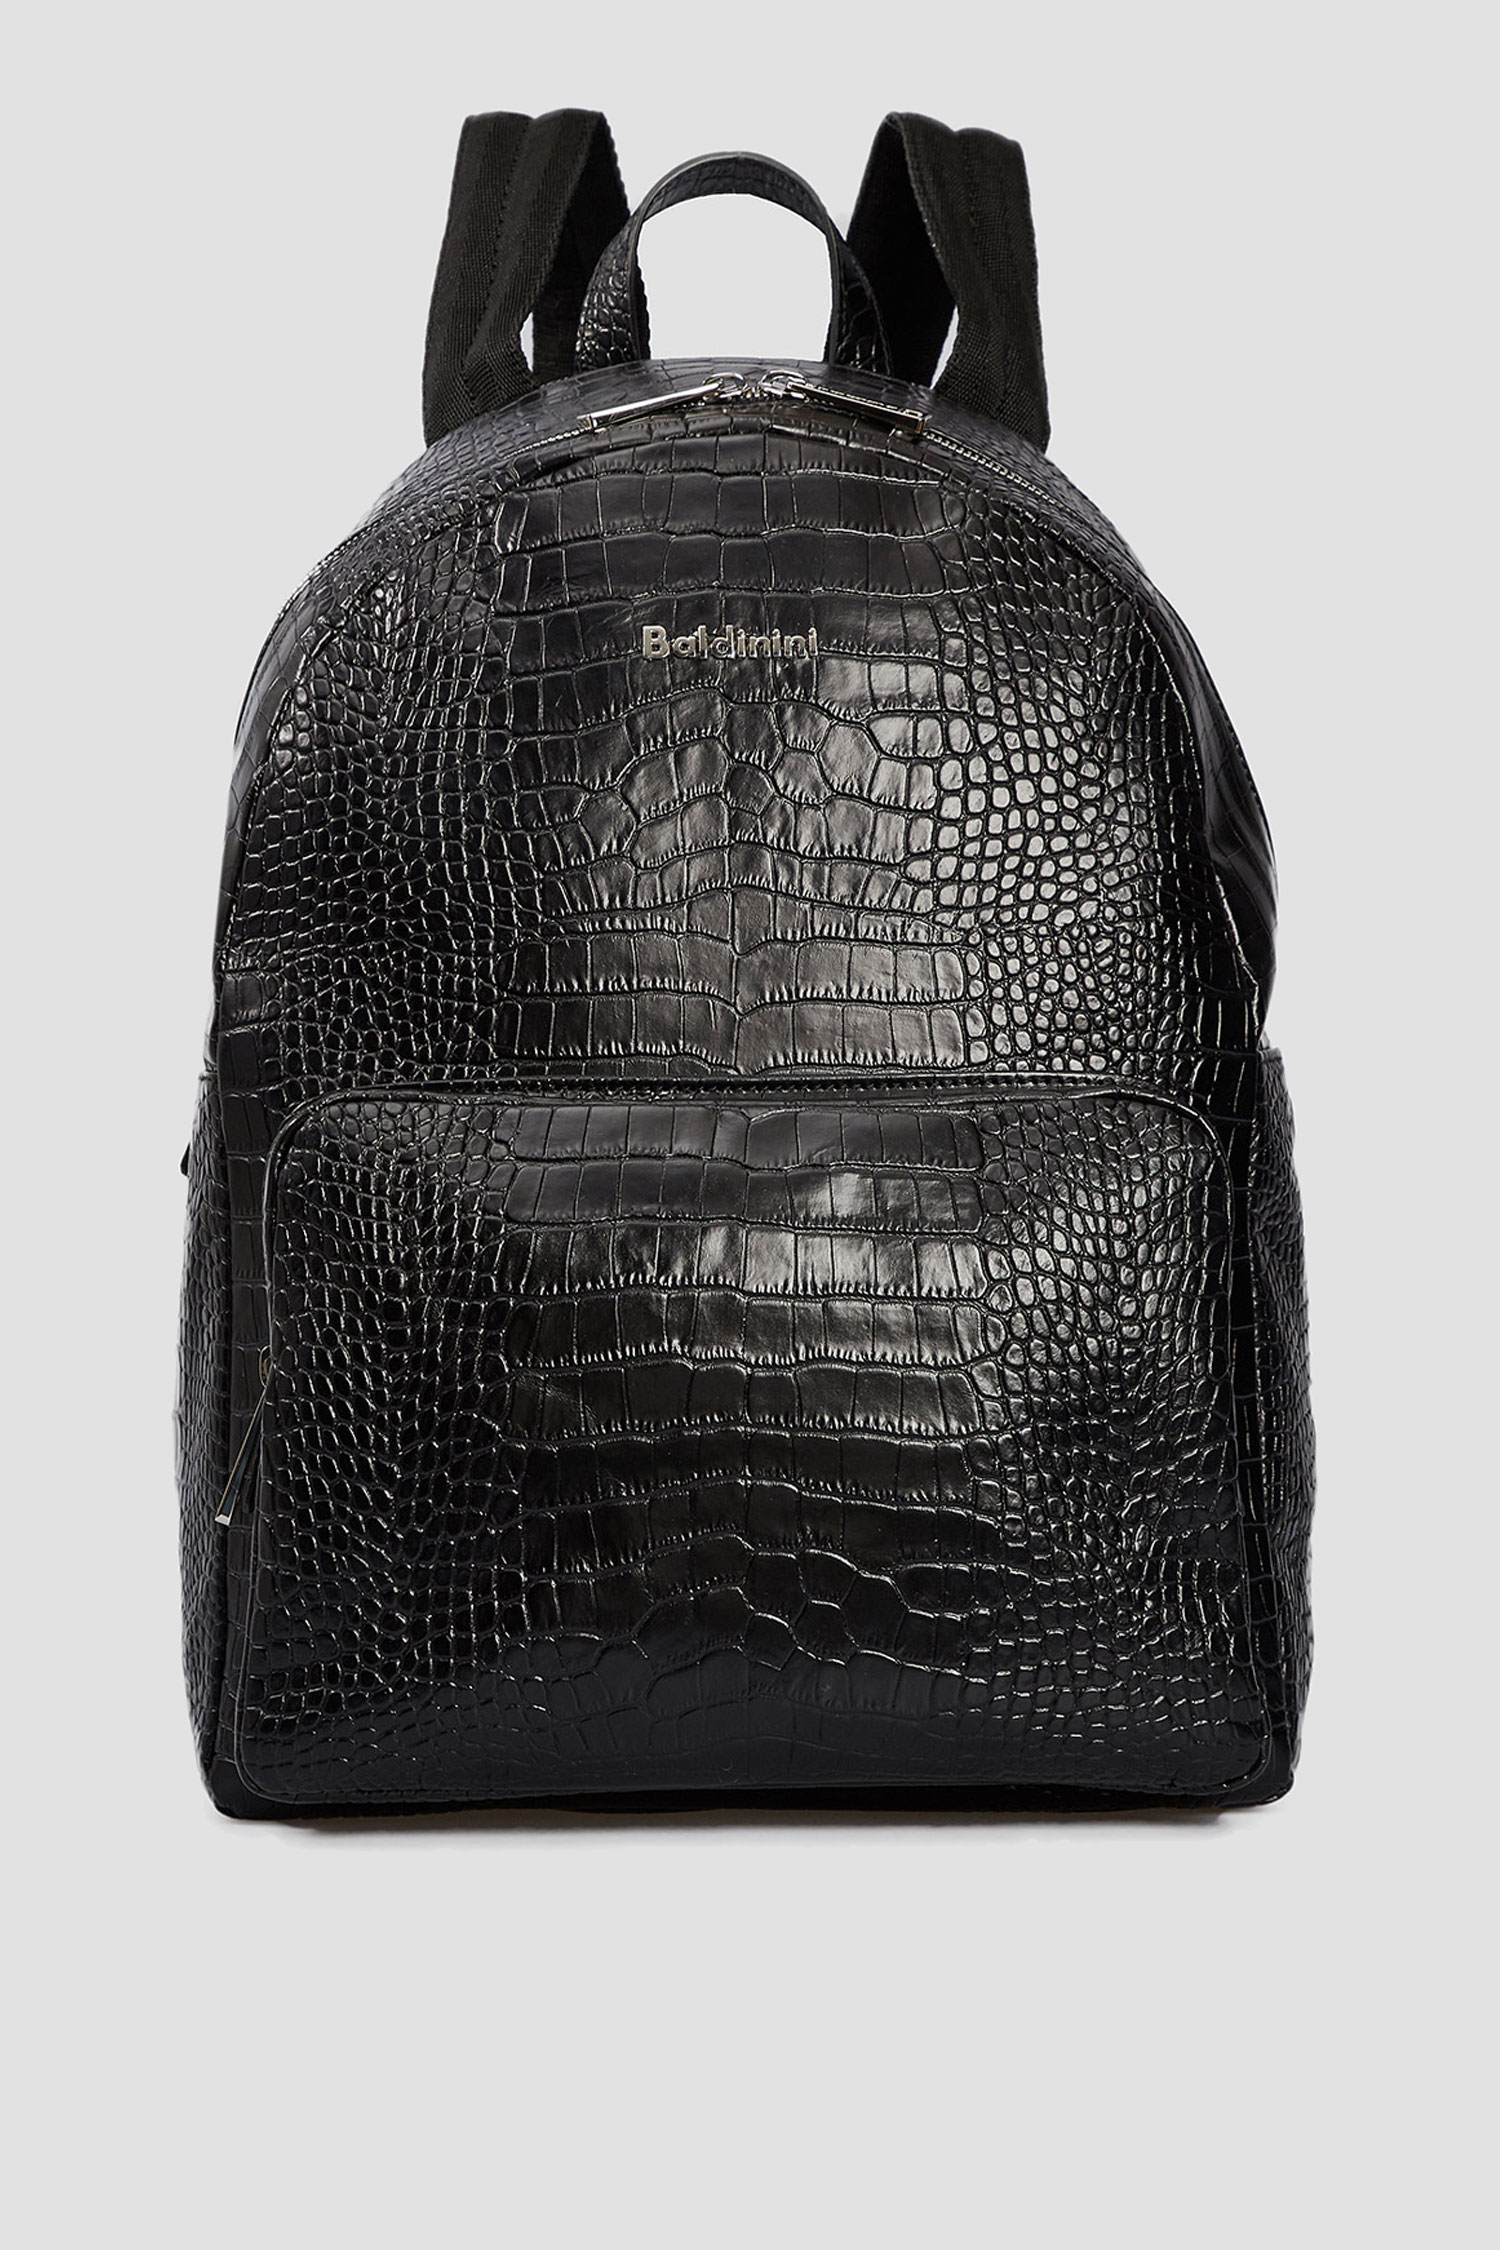 Черный кожаный рюкзак для парней Baldinini C2B003COCC;0000